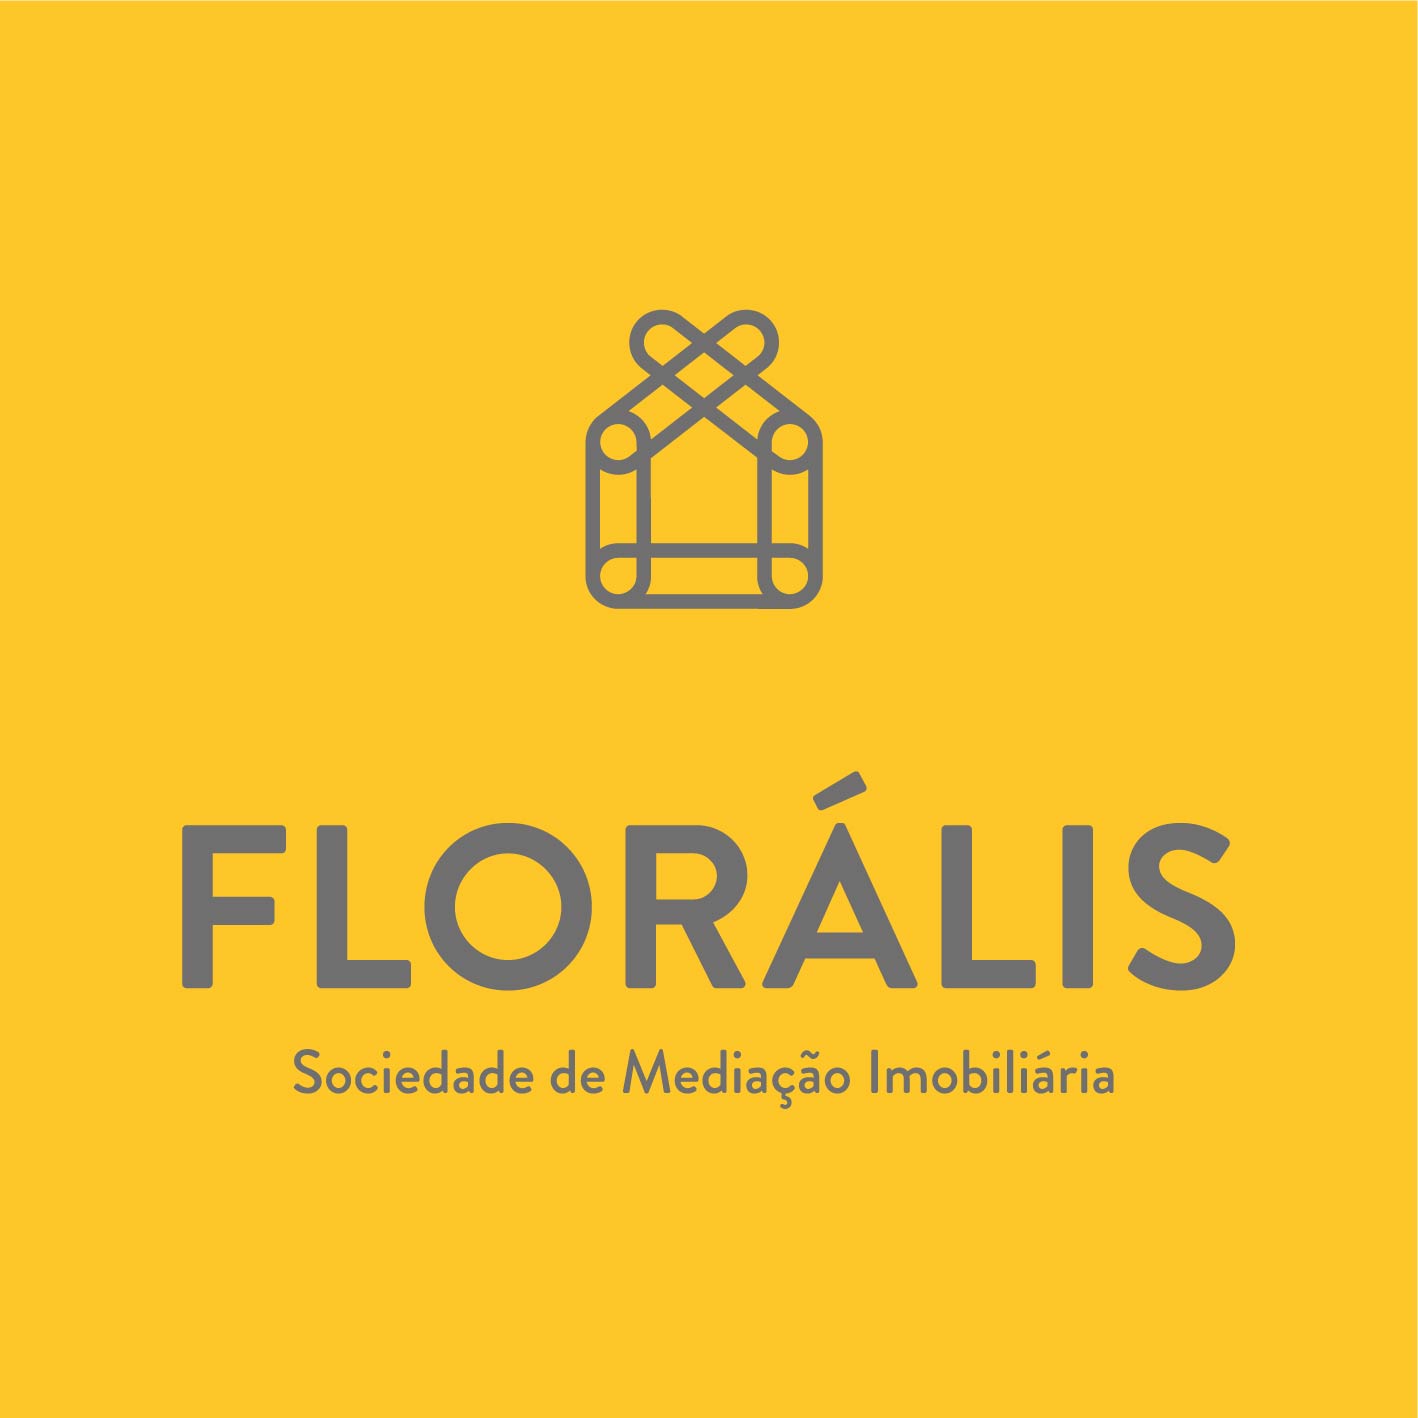 FLORALIS - SOC. MEDIAÇÃO IMOBILIÁRIA, LDA